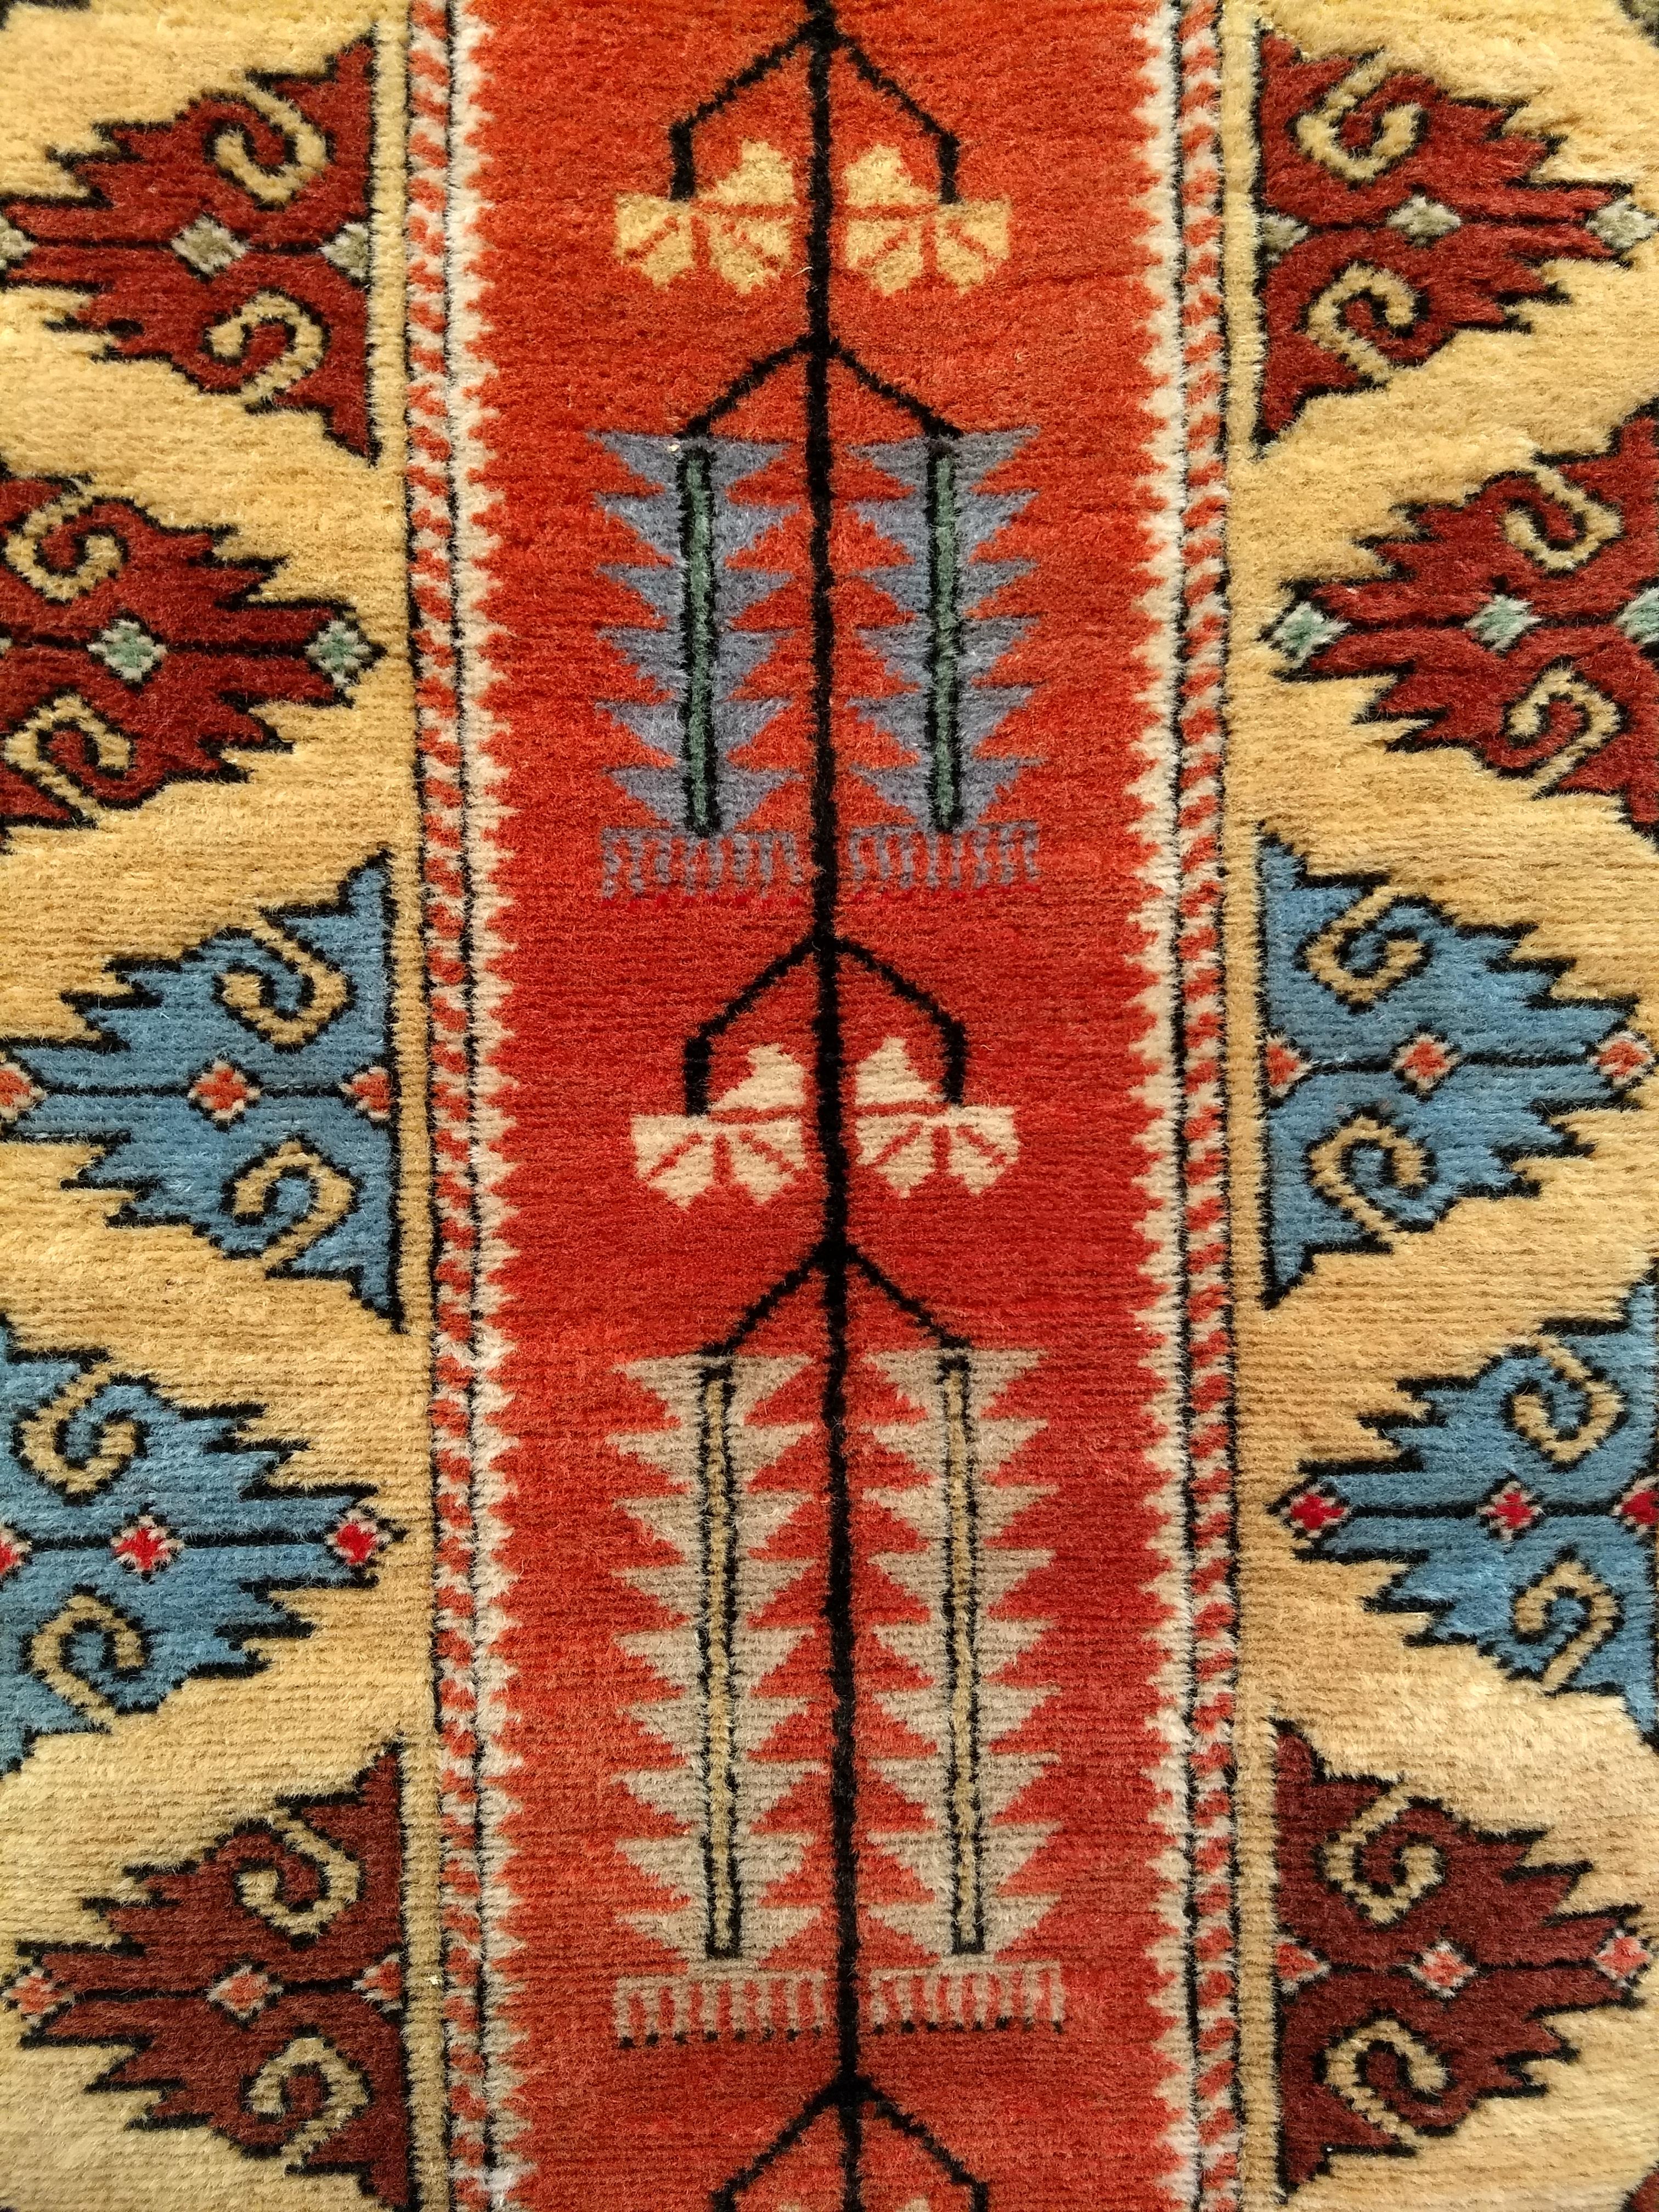 Tapis de course coloré Oushak turc vintage à motifs géométriques datant du milieu des années 1900.  Le tapis a un design moderne et de belles couleurs vives, notamment des couleurs vertes, bleues, brunes, jaunes, roses et rouges dans le champ et la